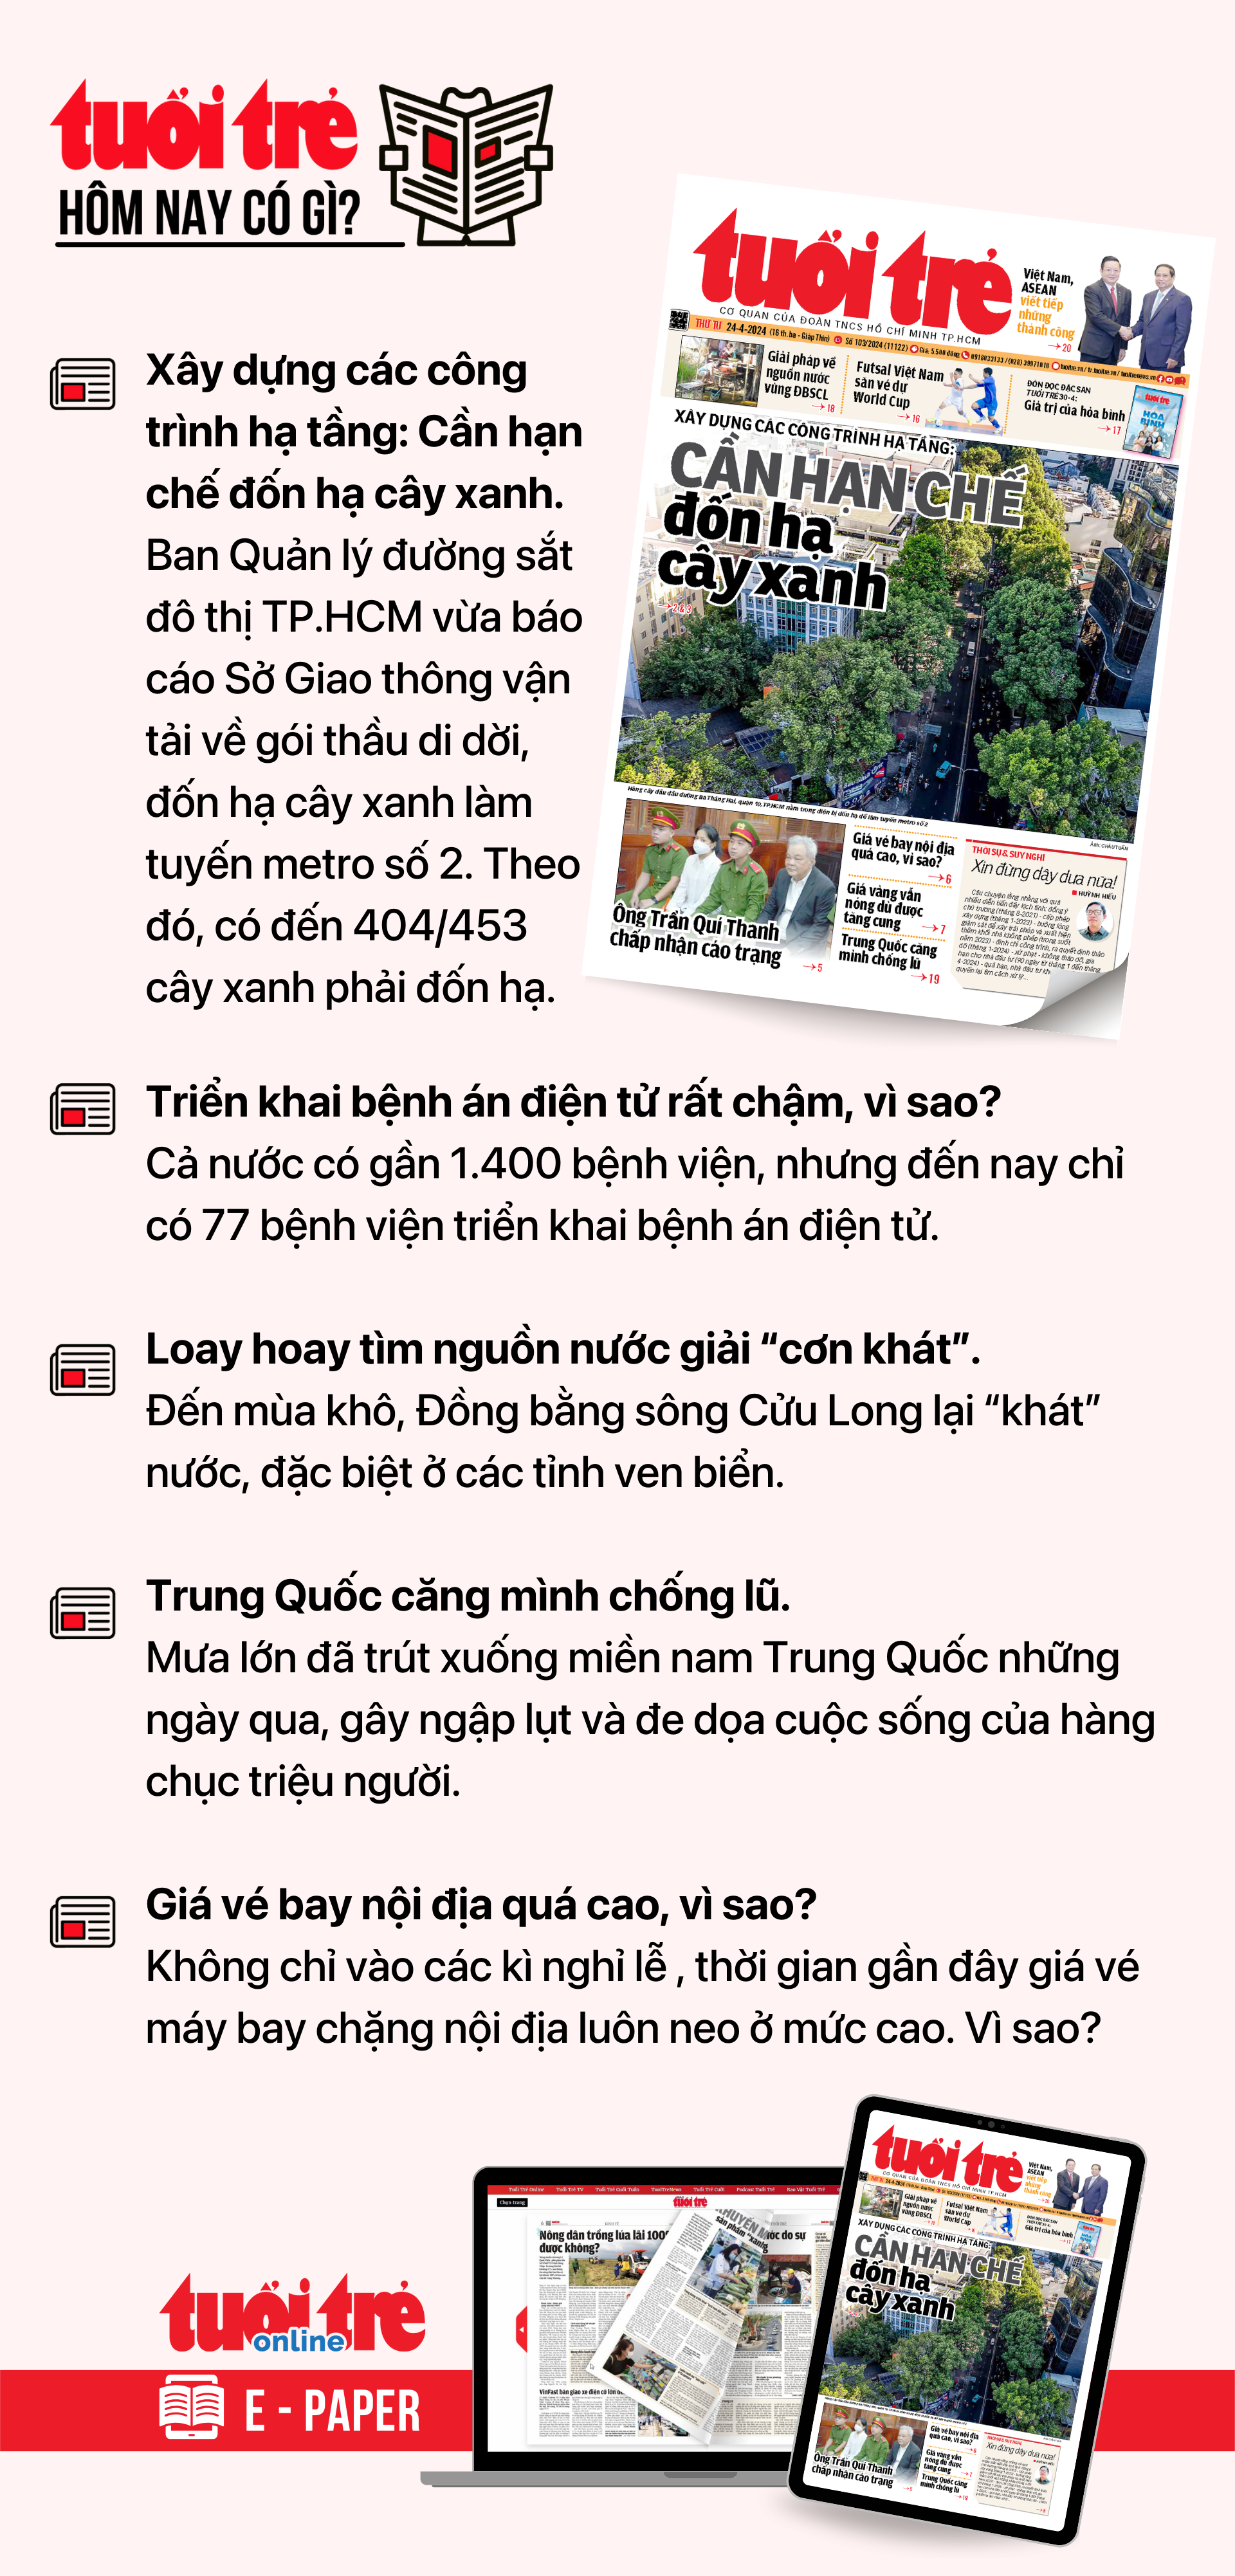 ข่าวหลักจากหนังสือพิมพ์ Tuoi Tre วันนี้ 24 เมษายน  หากต้องการอ่านหนังสือพิมพ์ Tuoi Tre ในรูปแบบ E-paper โปรดสมัครรับข้อมูลจาก Tuoi Tre Sao ที่นี่